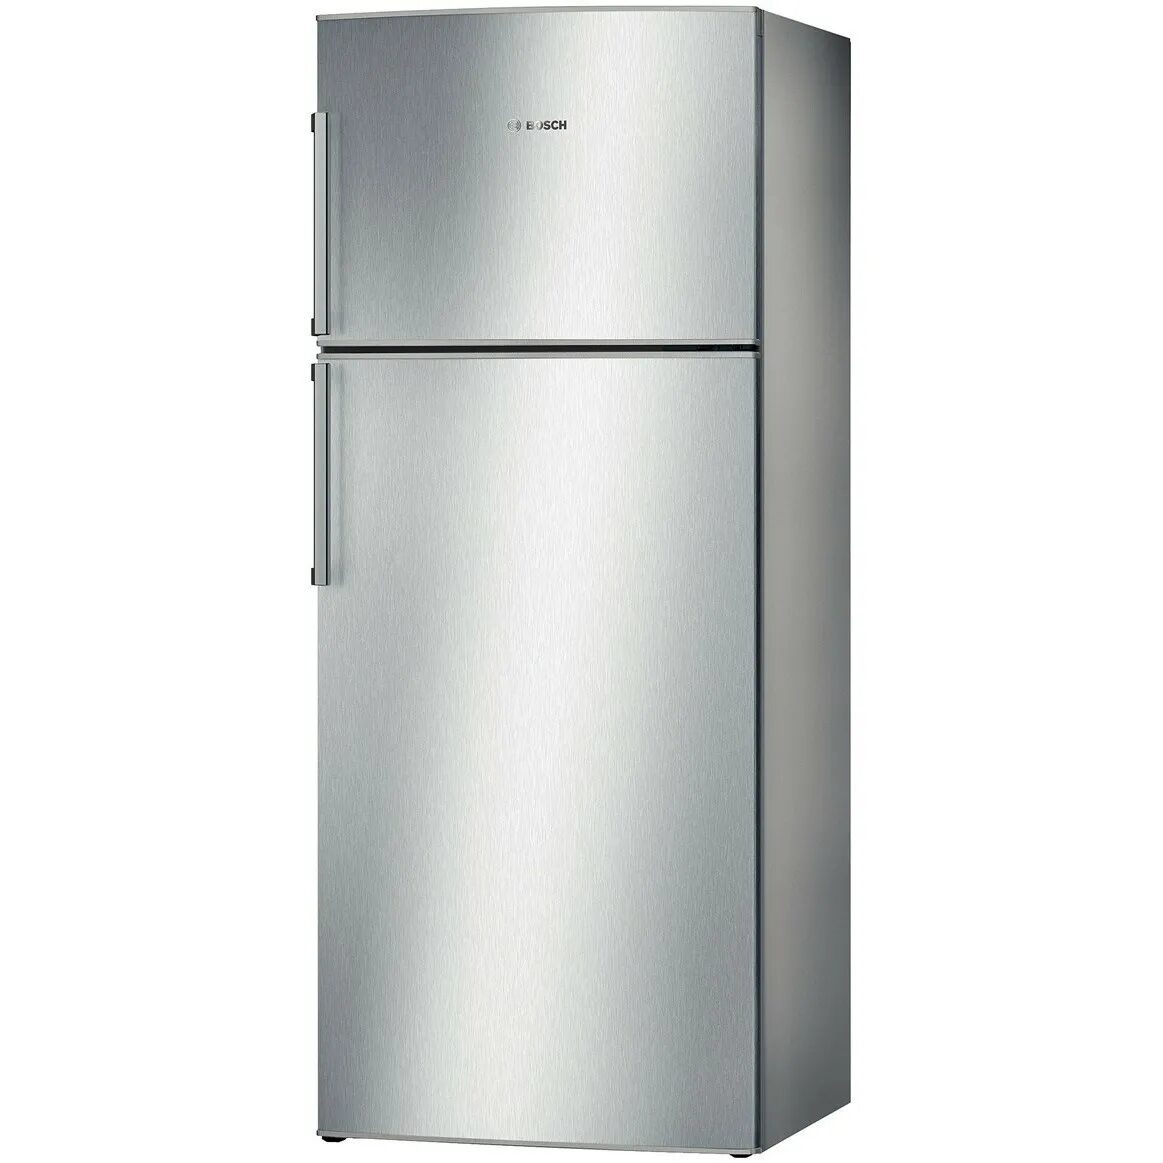 Холодильники no frost купить в москве. Bosch kgn86ai30u. Bosch kgn55vl20u. Холодильник Bosch kgn86ai30u. Холодильник бош двухкамерный ноу Фрост.